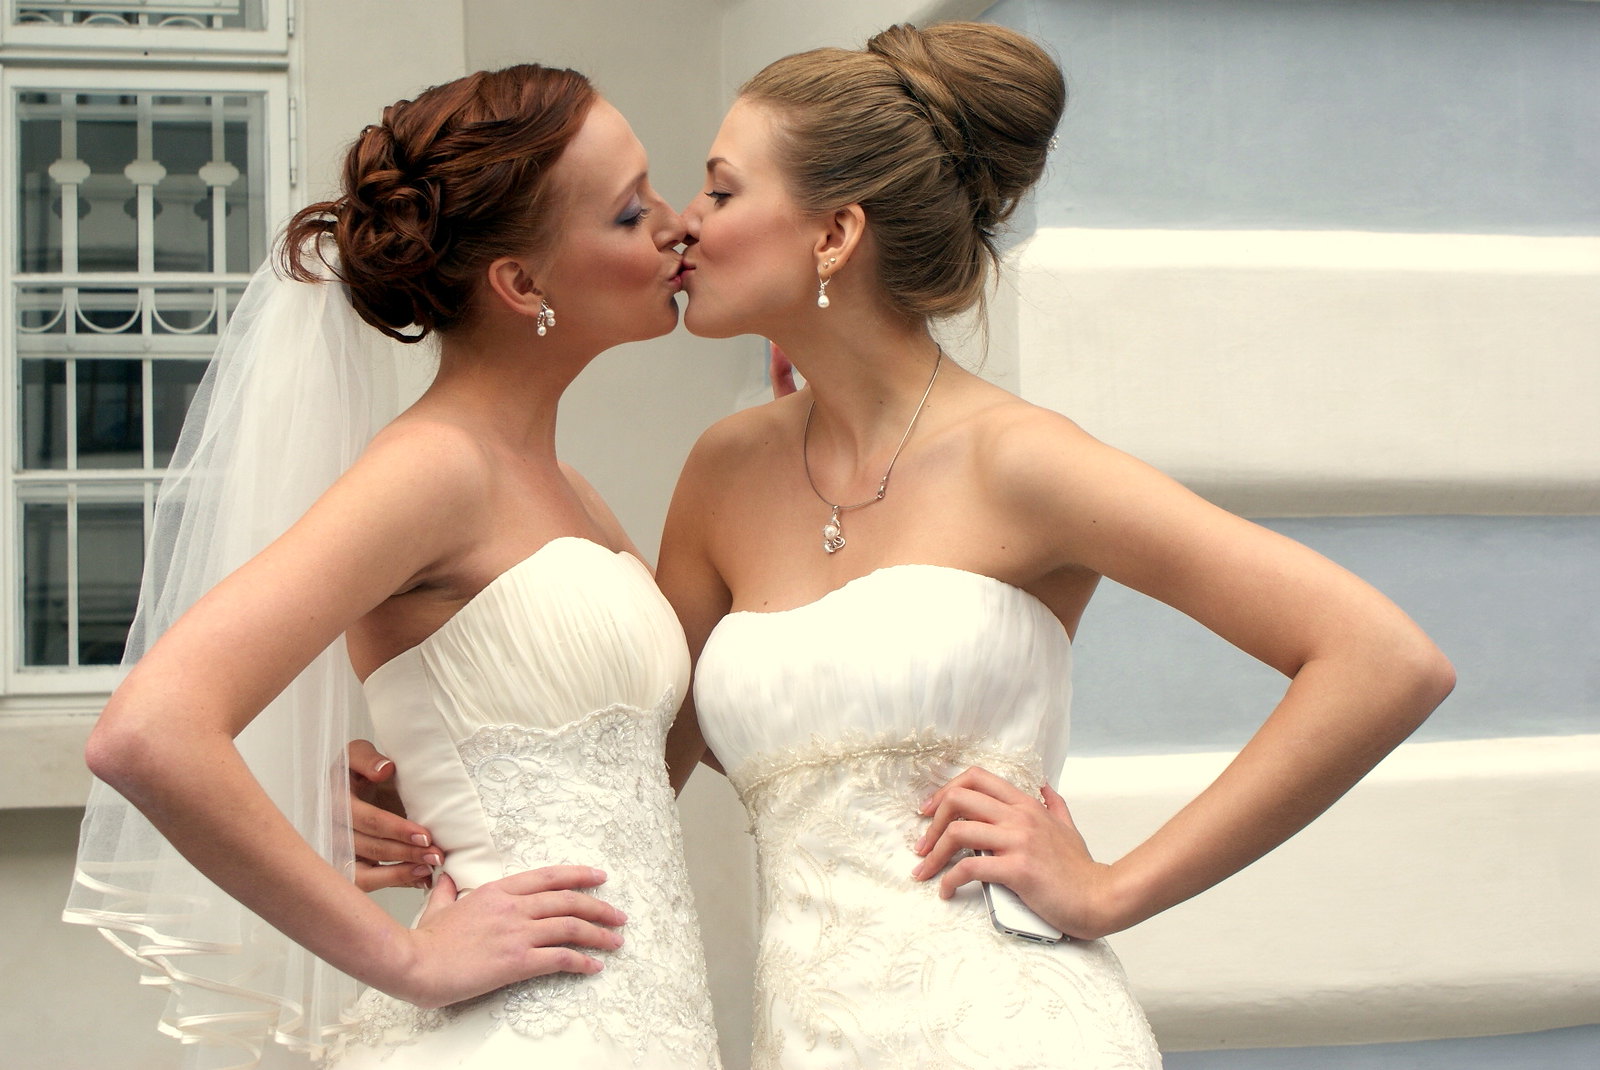 Lesbian could. Две девушки в свадебных платьях. Две невесты красивые. Свадебные платья для двух невест. Свадебное платье свадьба двух девушек.